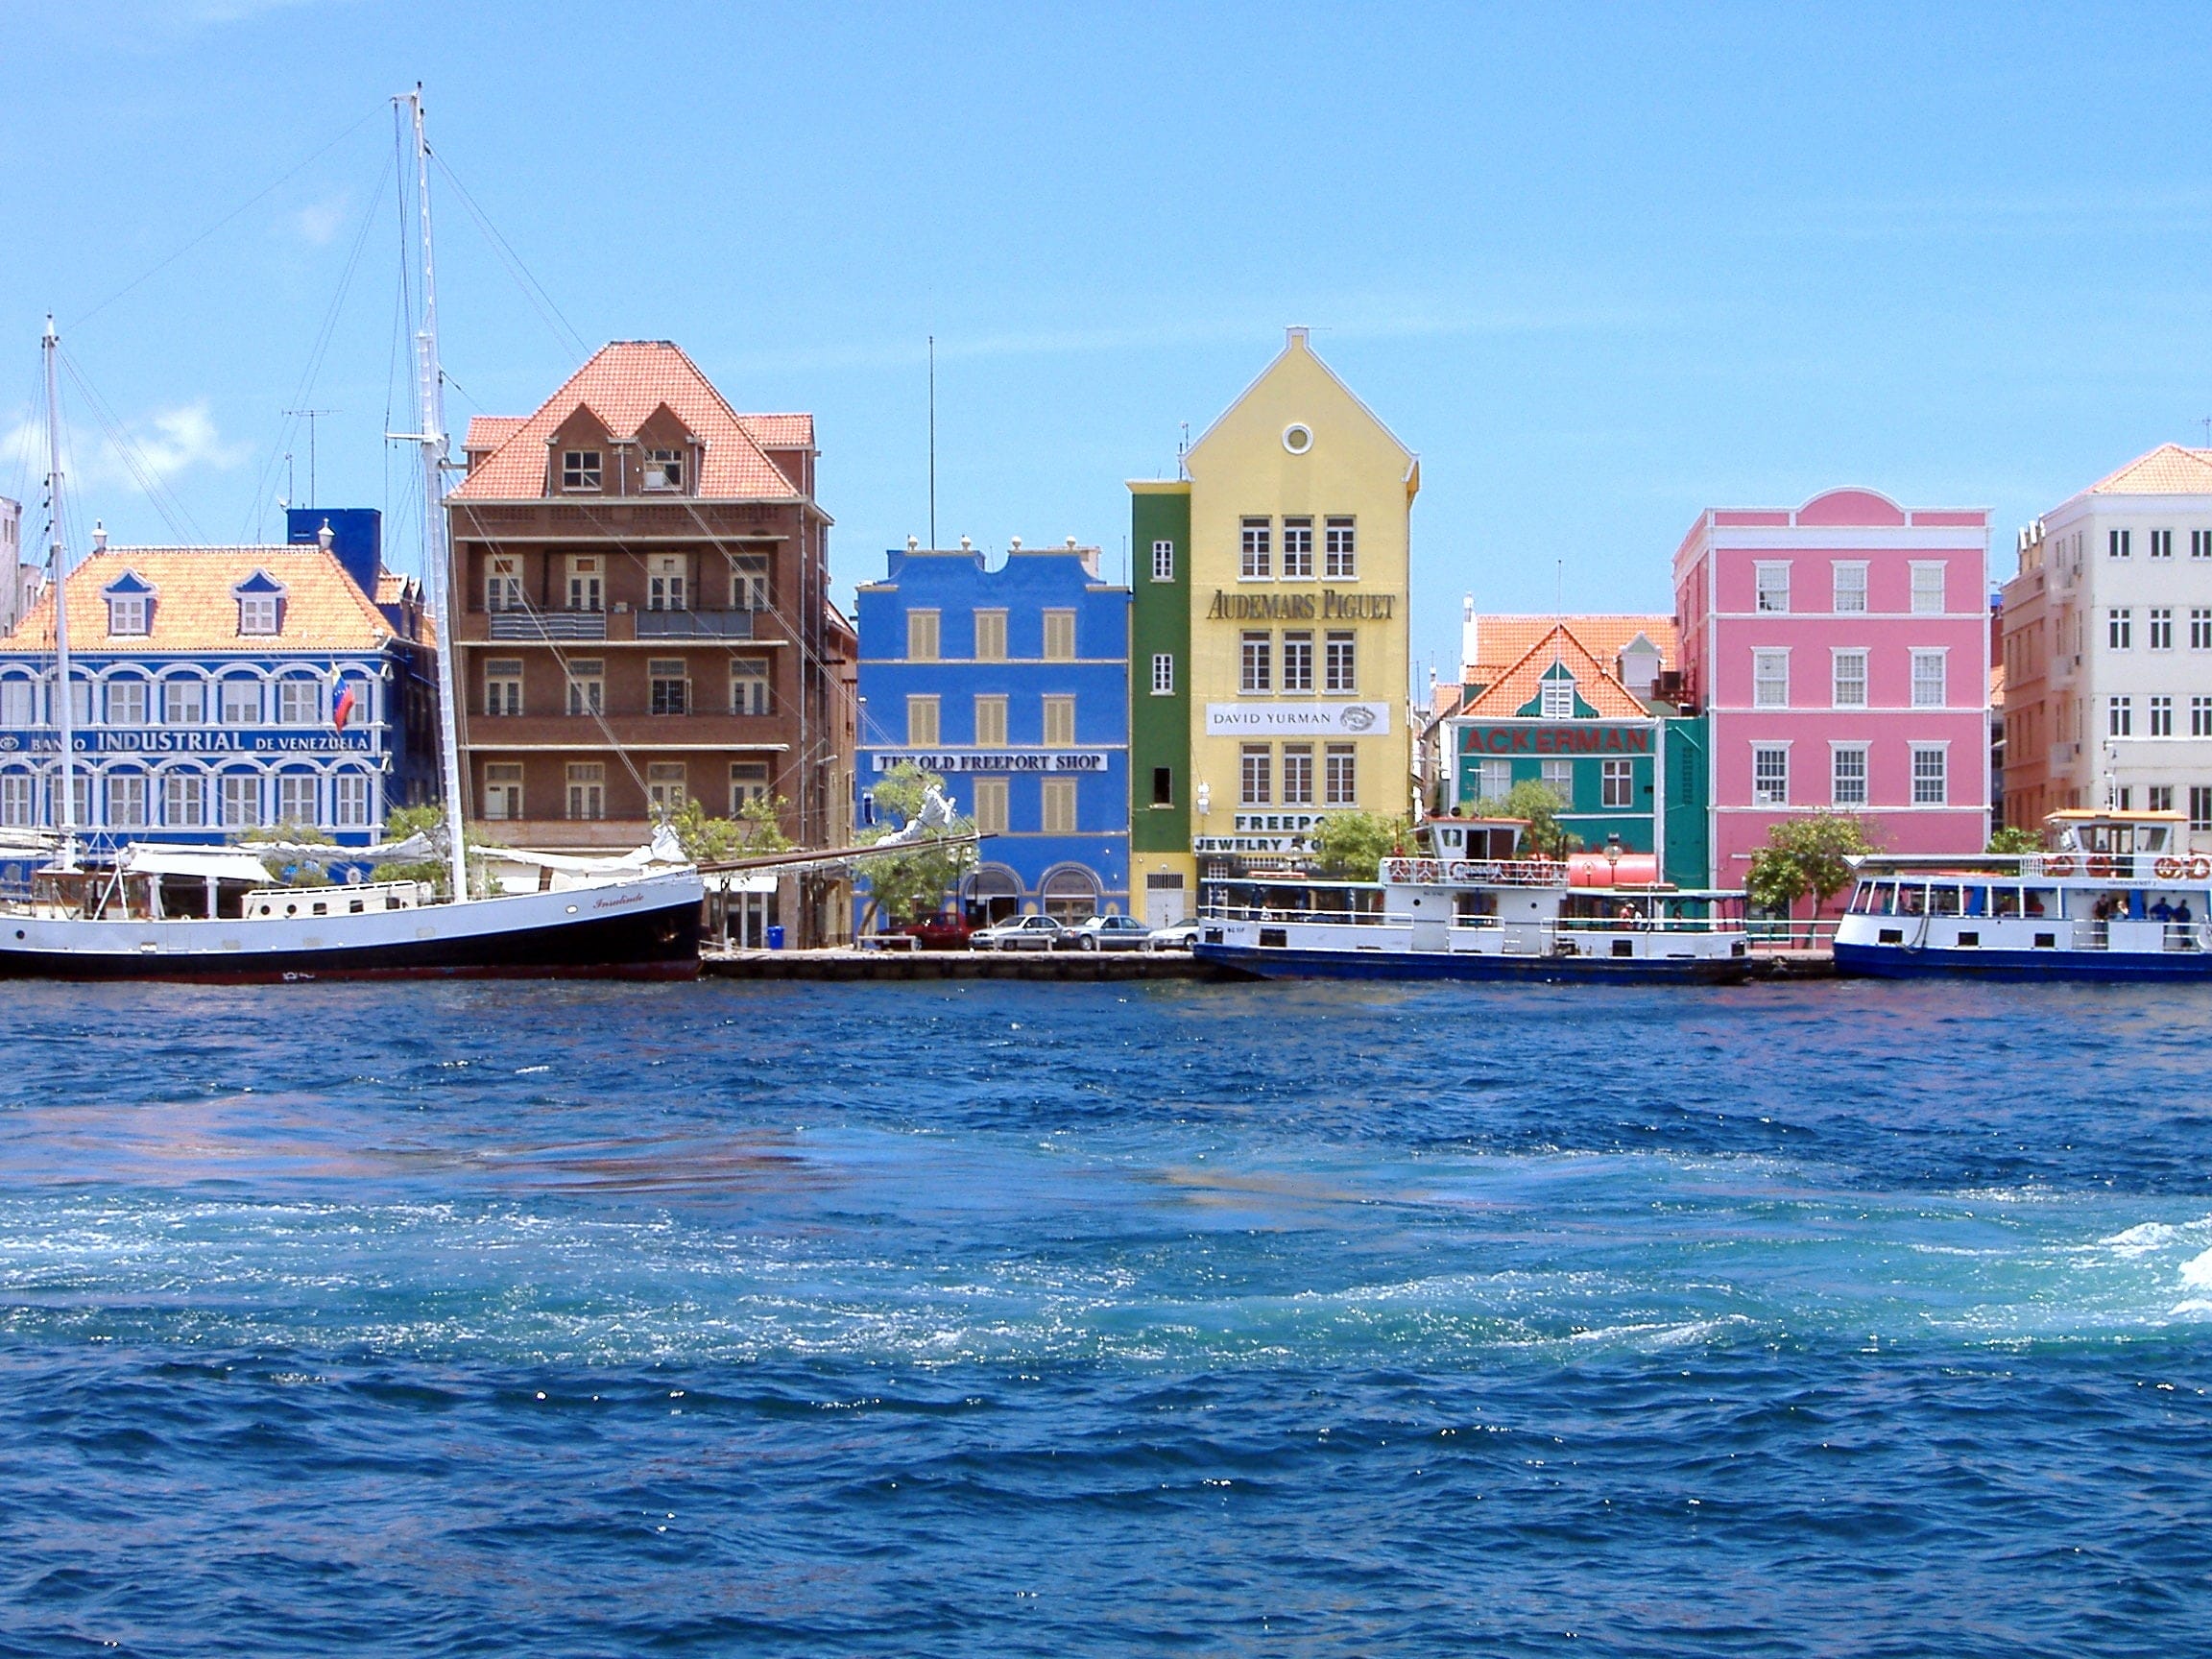 De kleurrijke gebouwen in de stad Curaçao, Willemstad. Met boten die in de oceaan varen.